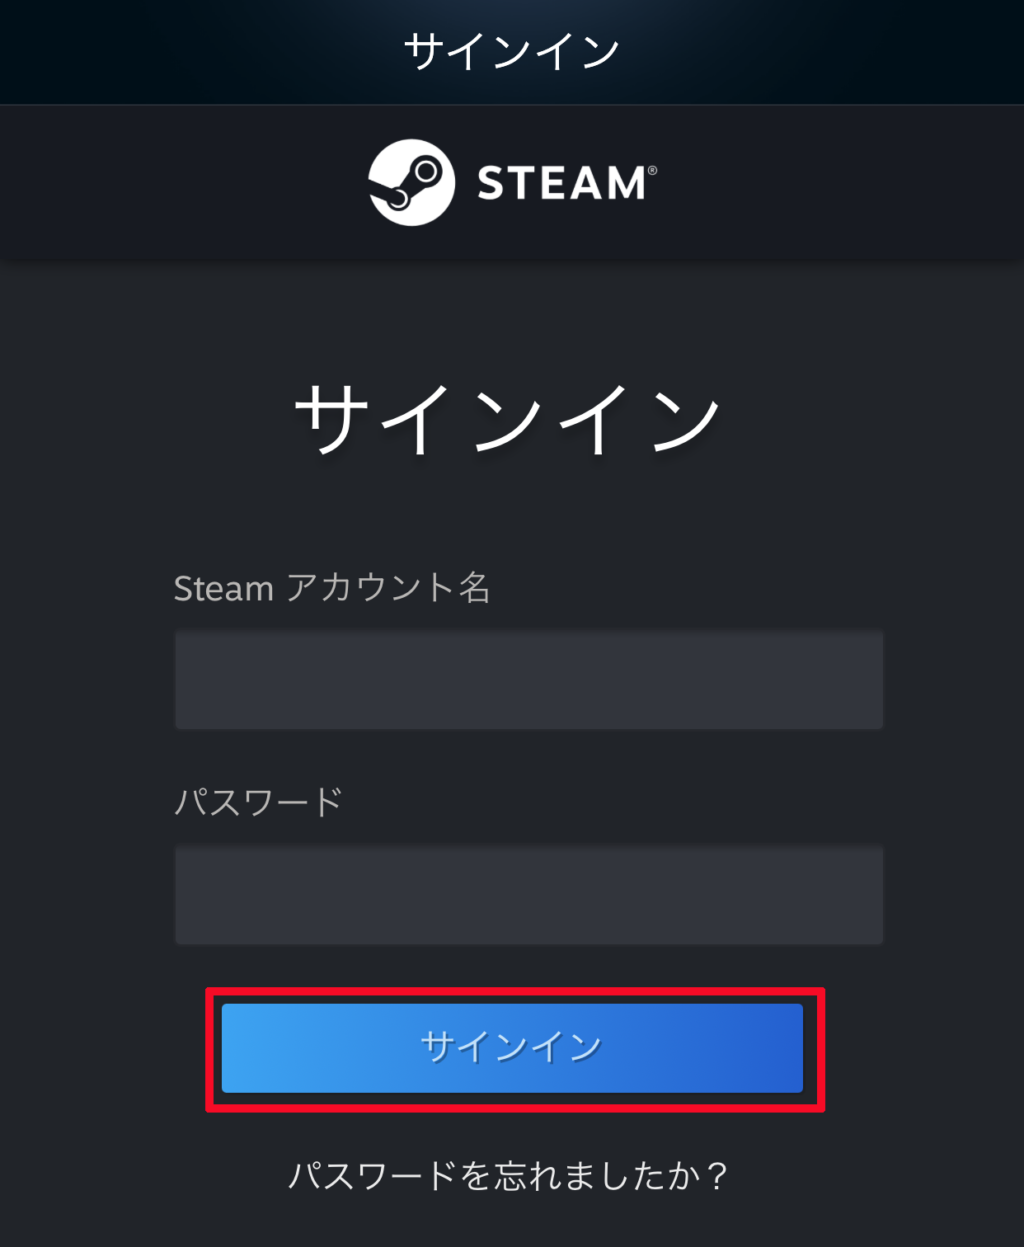 「Steam Mobile」を起動してご自身のSteamアカウントへサインインをします。